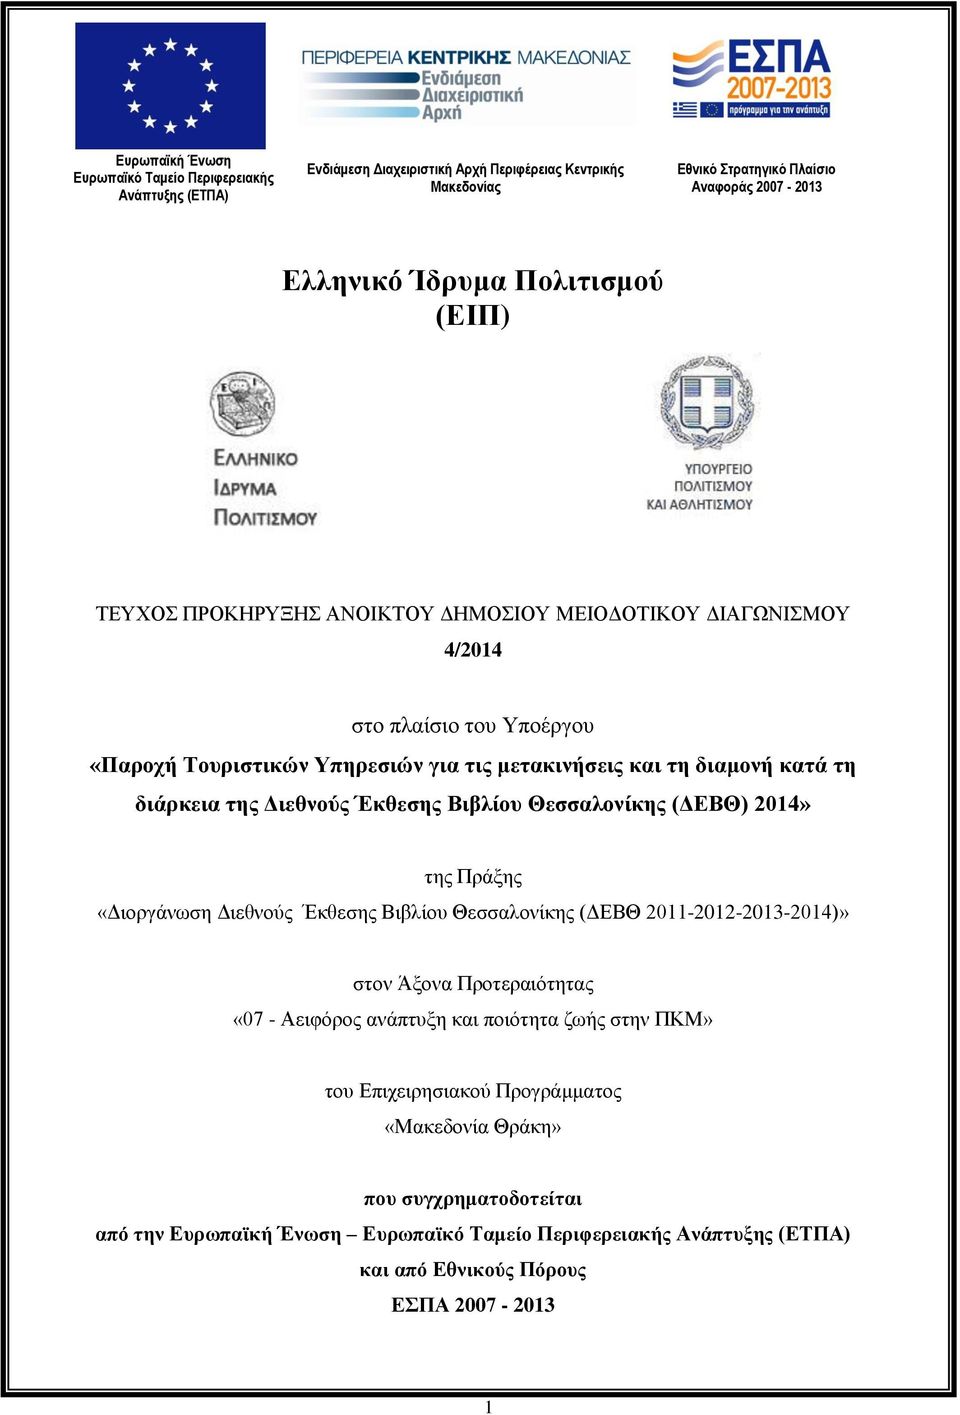 Διεθνούς Έκθεσης Βιβλίου Θεσσαλονίκης (ΔΕΒΘ) 2014» της Πράξης «Διοργάνωση Διεθνούς Έκθεσης Βιβλίου Θεσσαλονίκης (ΔΕΒΘ 2011-2012-2013-2014)» στον Άξονα Προτεραιότητας «07 - Αειφόρος ανάπτυξη και